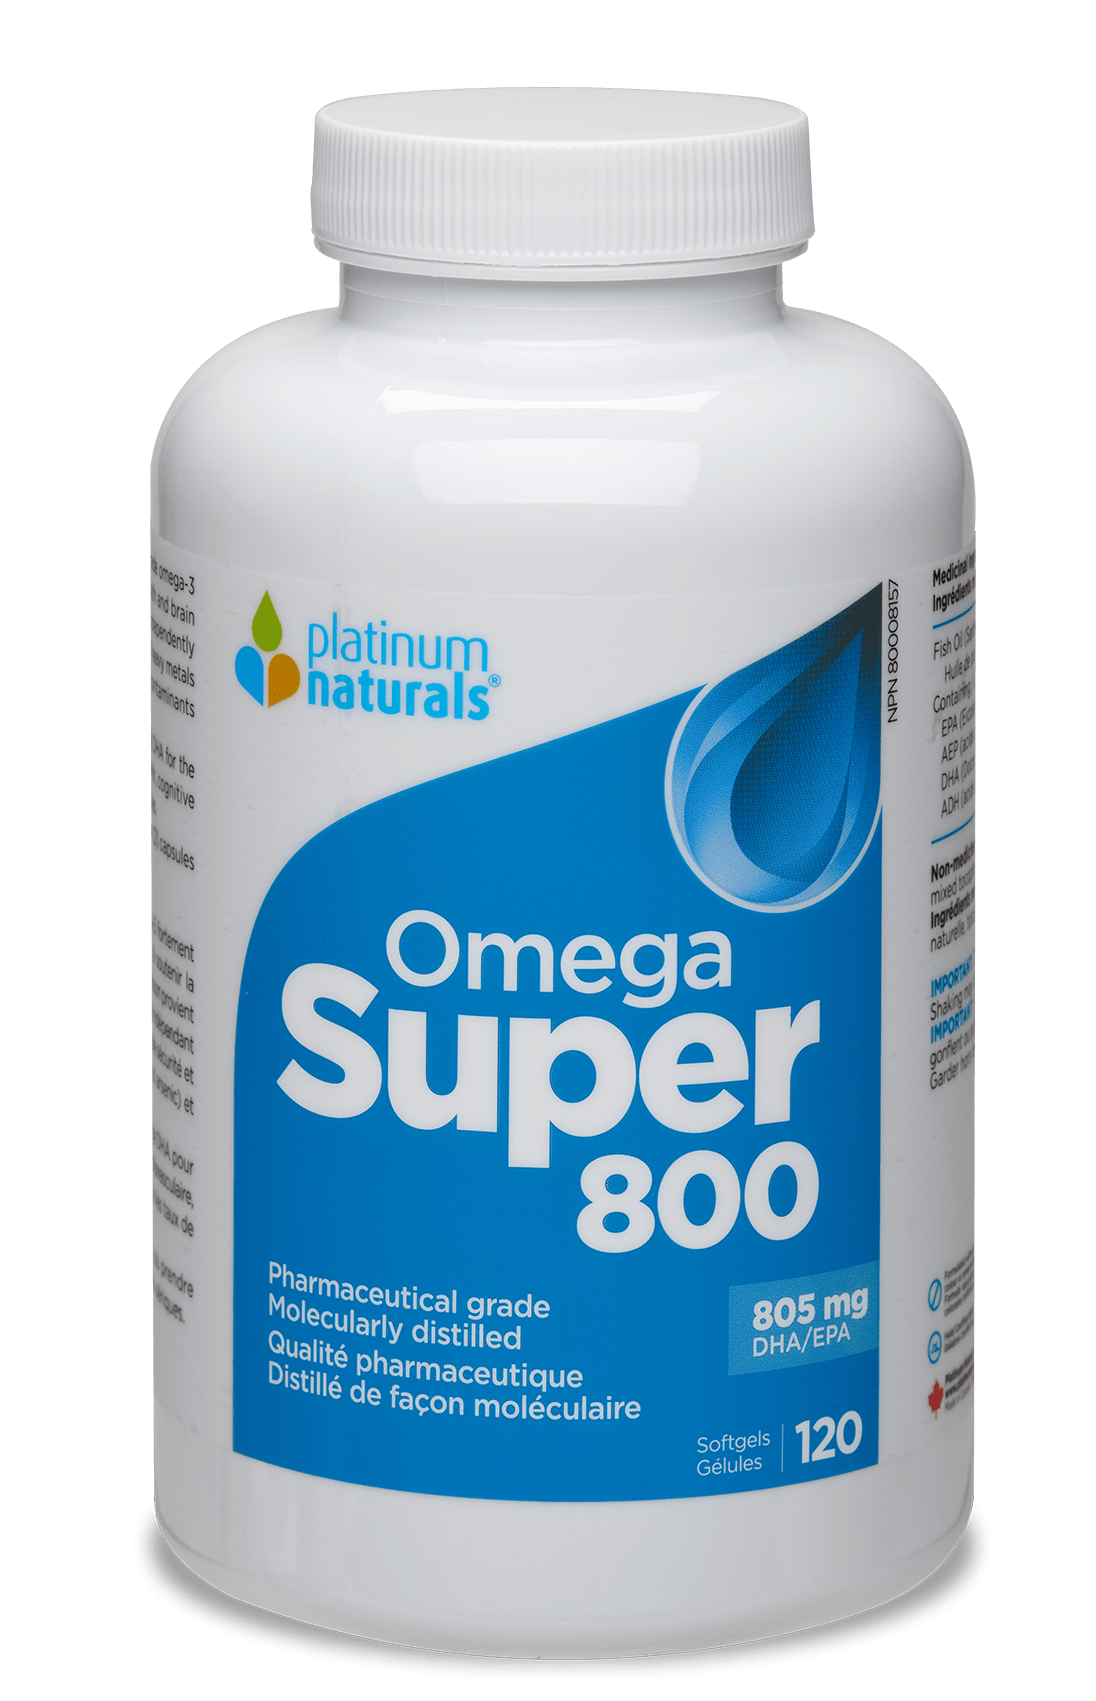 Omega Super 800 Omega cg-dev-platinumnaturals 120 